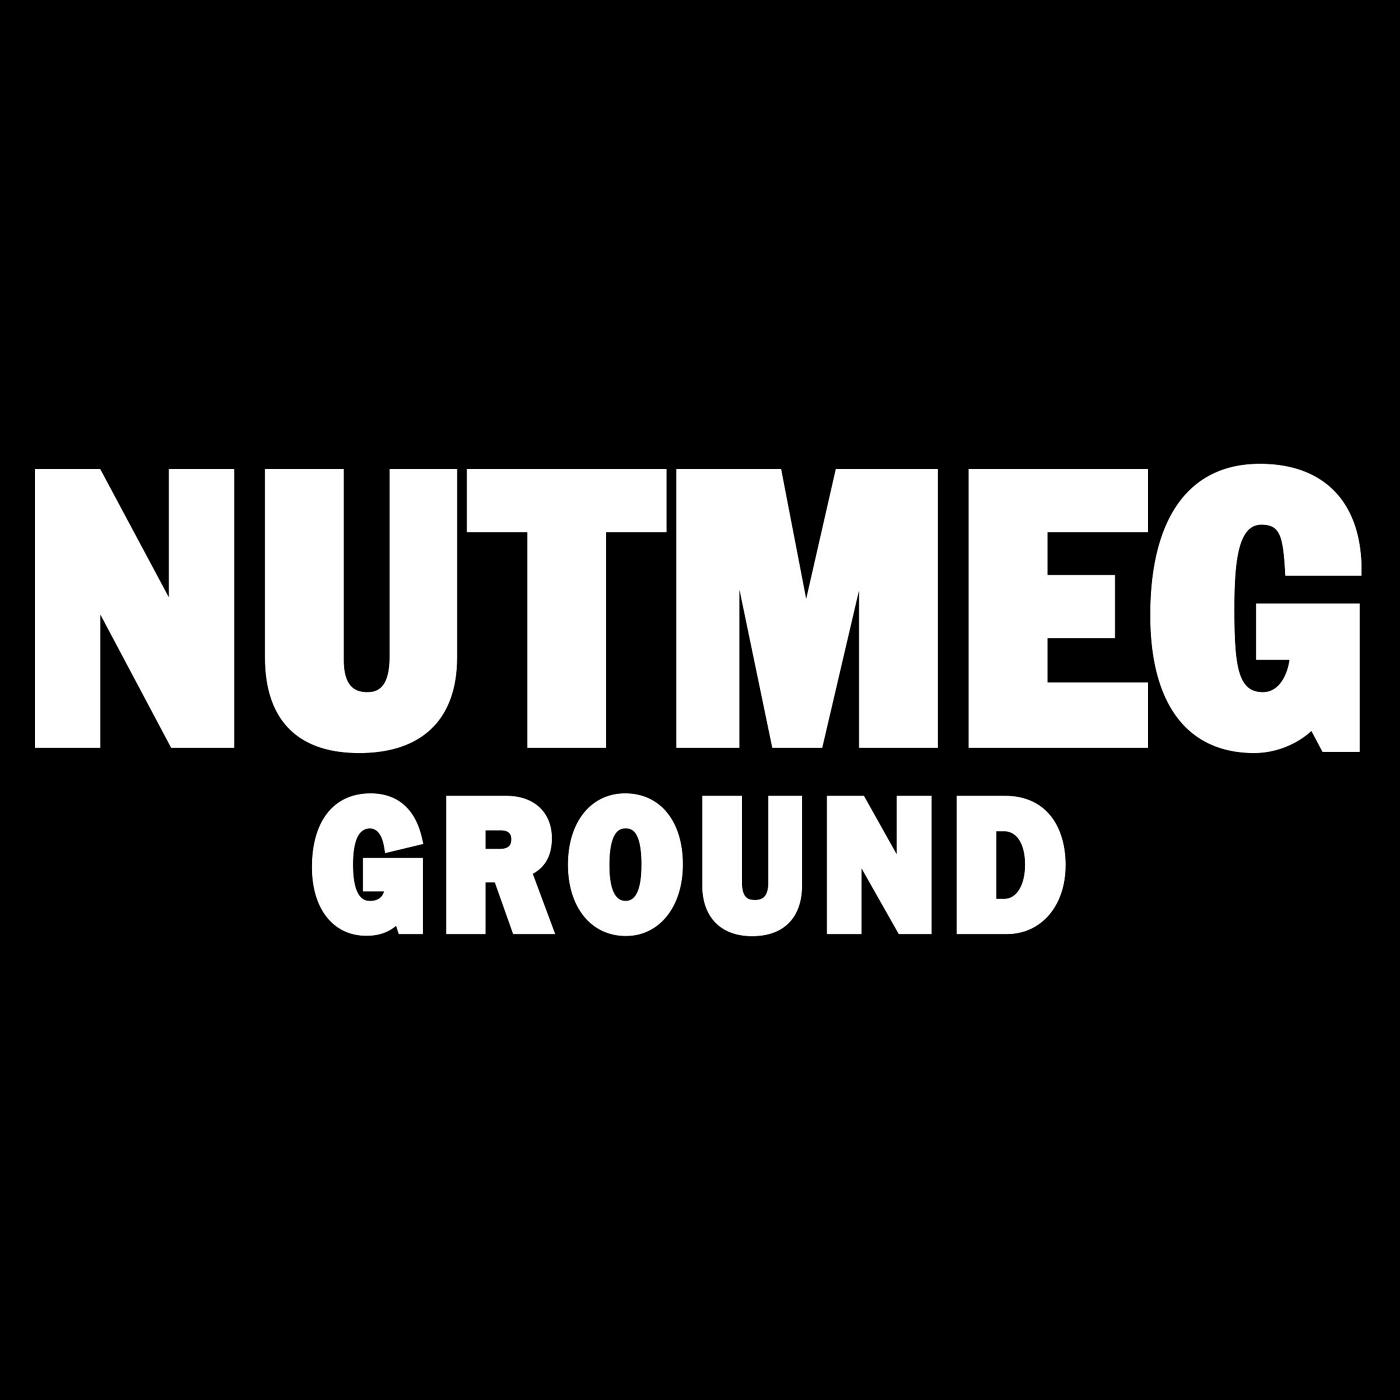 McCormick Ground Nutmeg; image 7 of 8